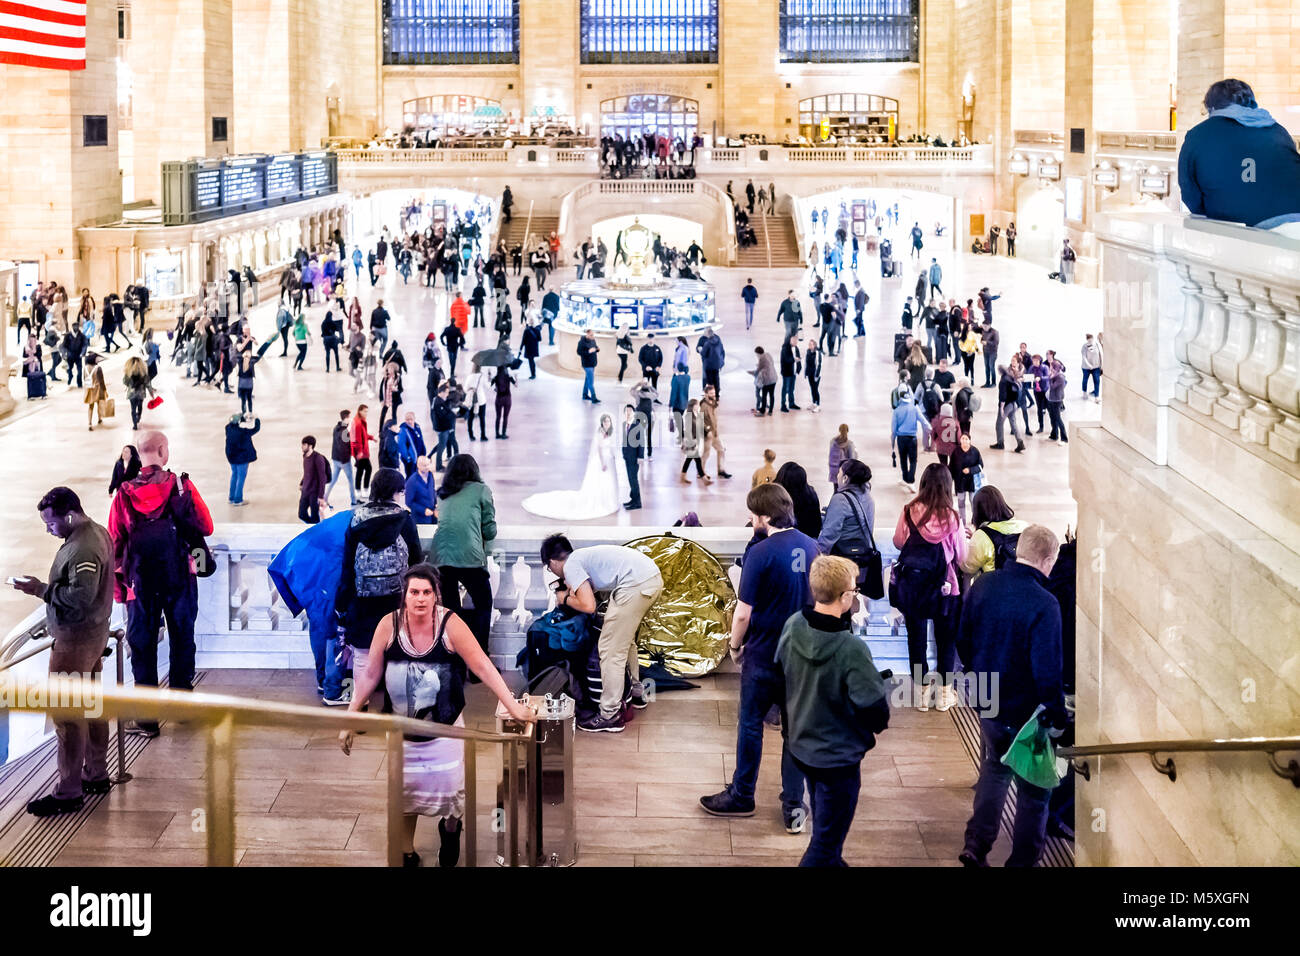 New York City, USA - Oktober 29, 2017: Die Menschen in der Grand Central Station Luftaufnahme hinunter in NYC Haupthalle, Erdgeschoss, Transport Concourse, peo Stockfoto